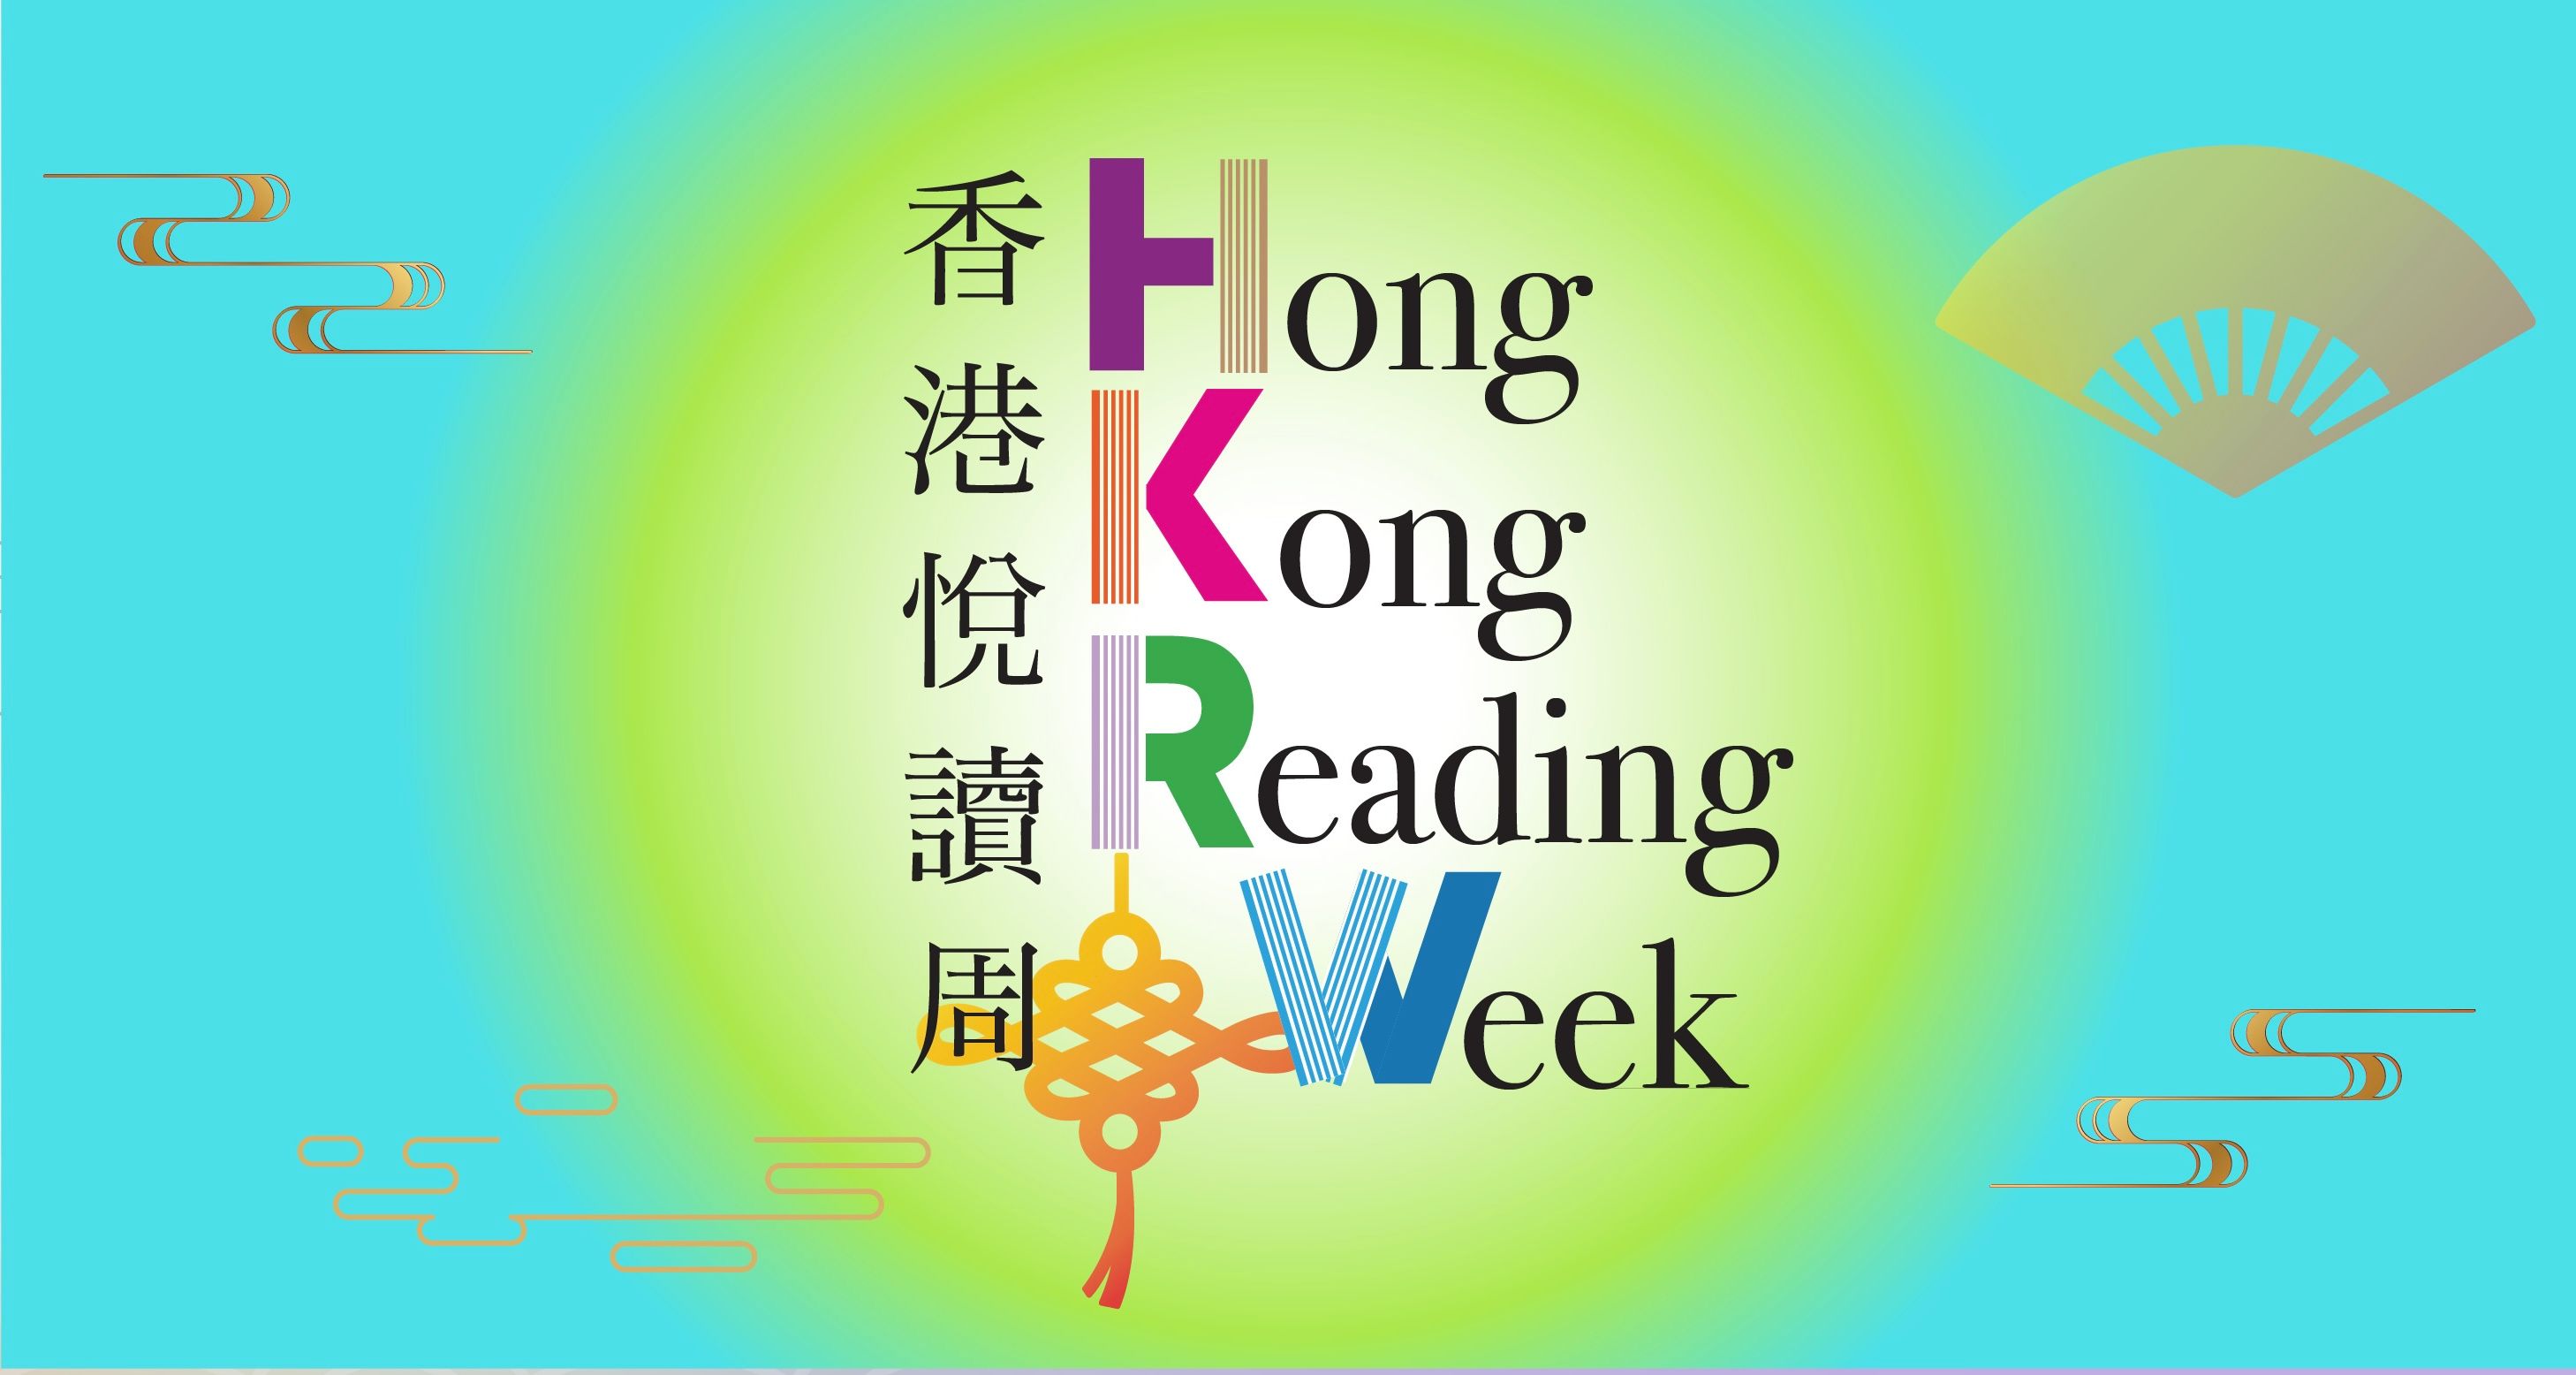 「香港悅讀周」同樂日周末舉行　各區指定公共圖書館推多元活動